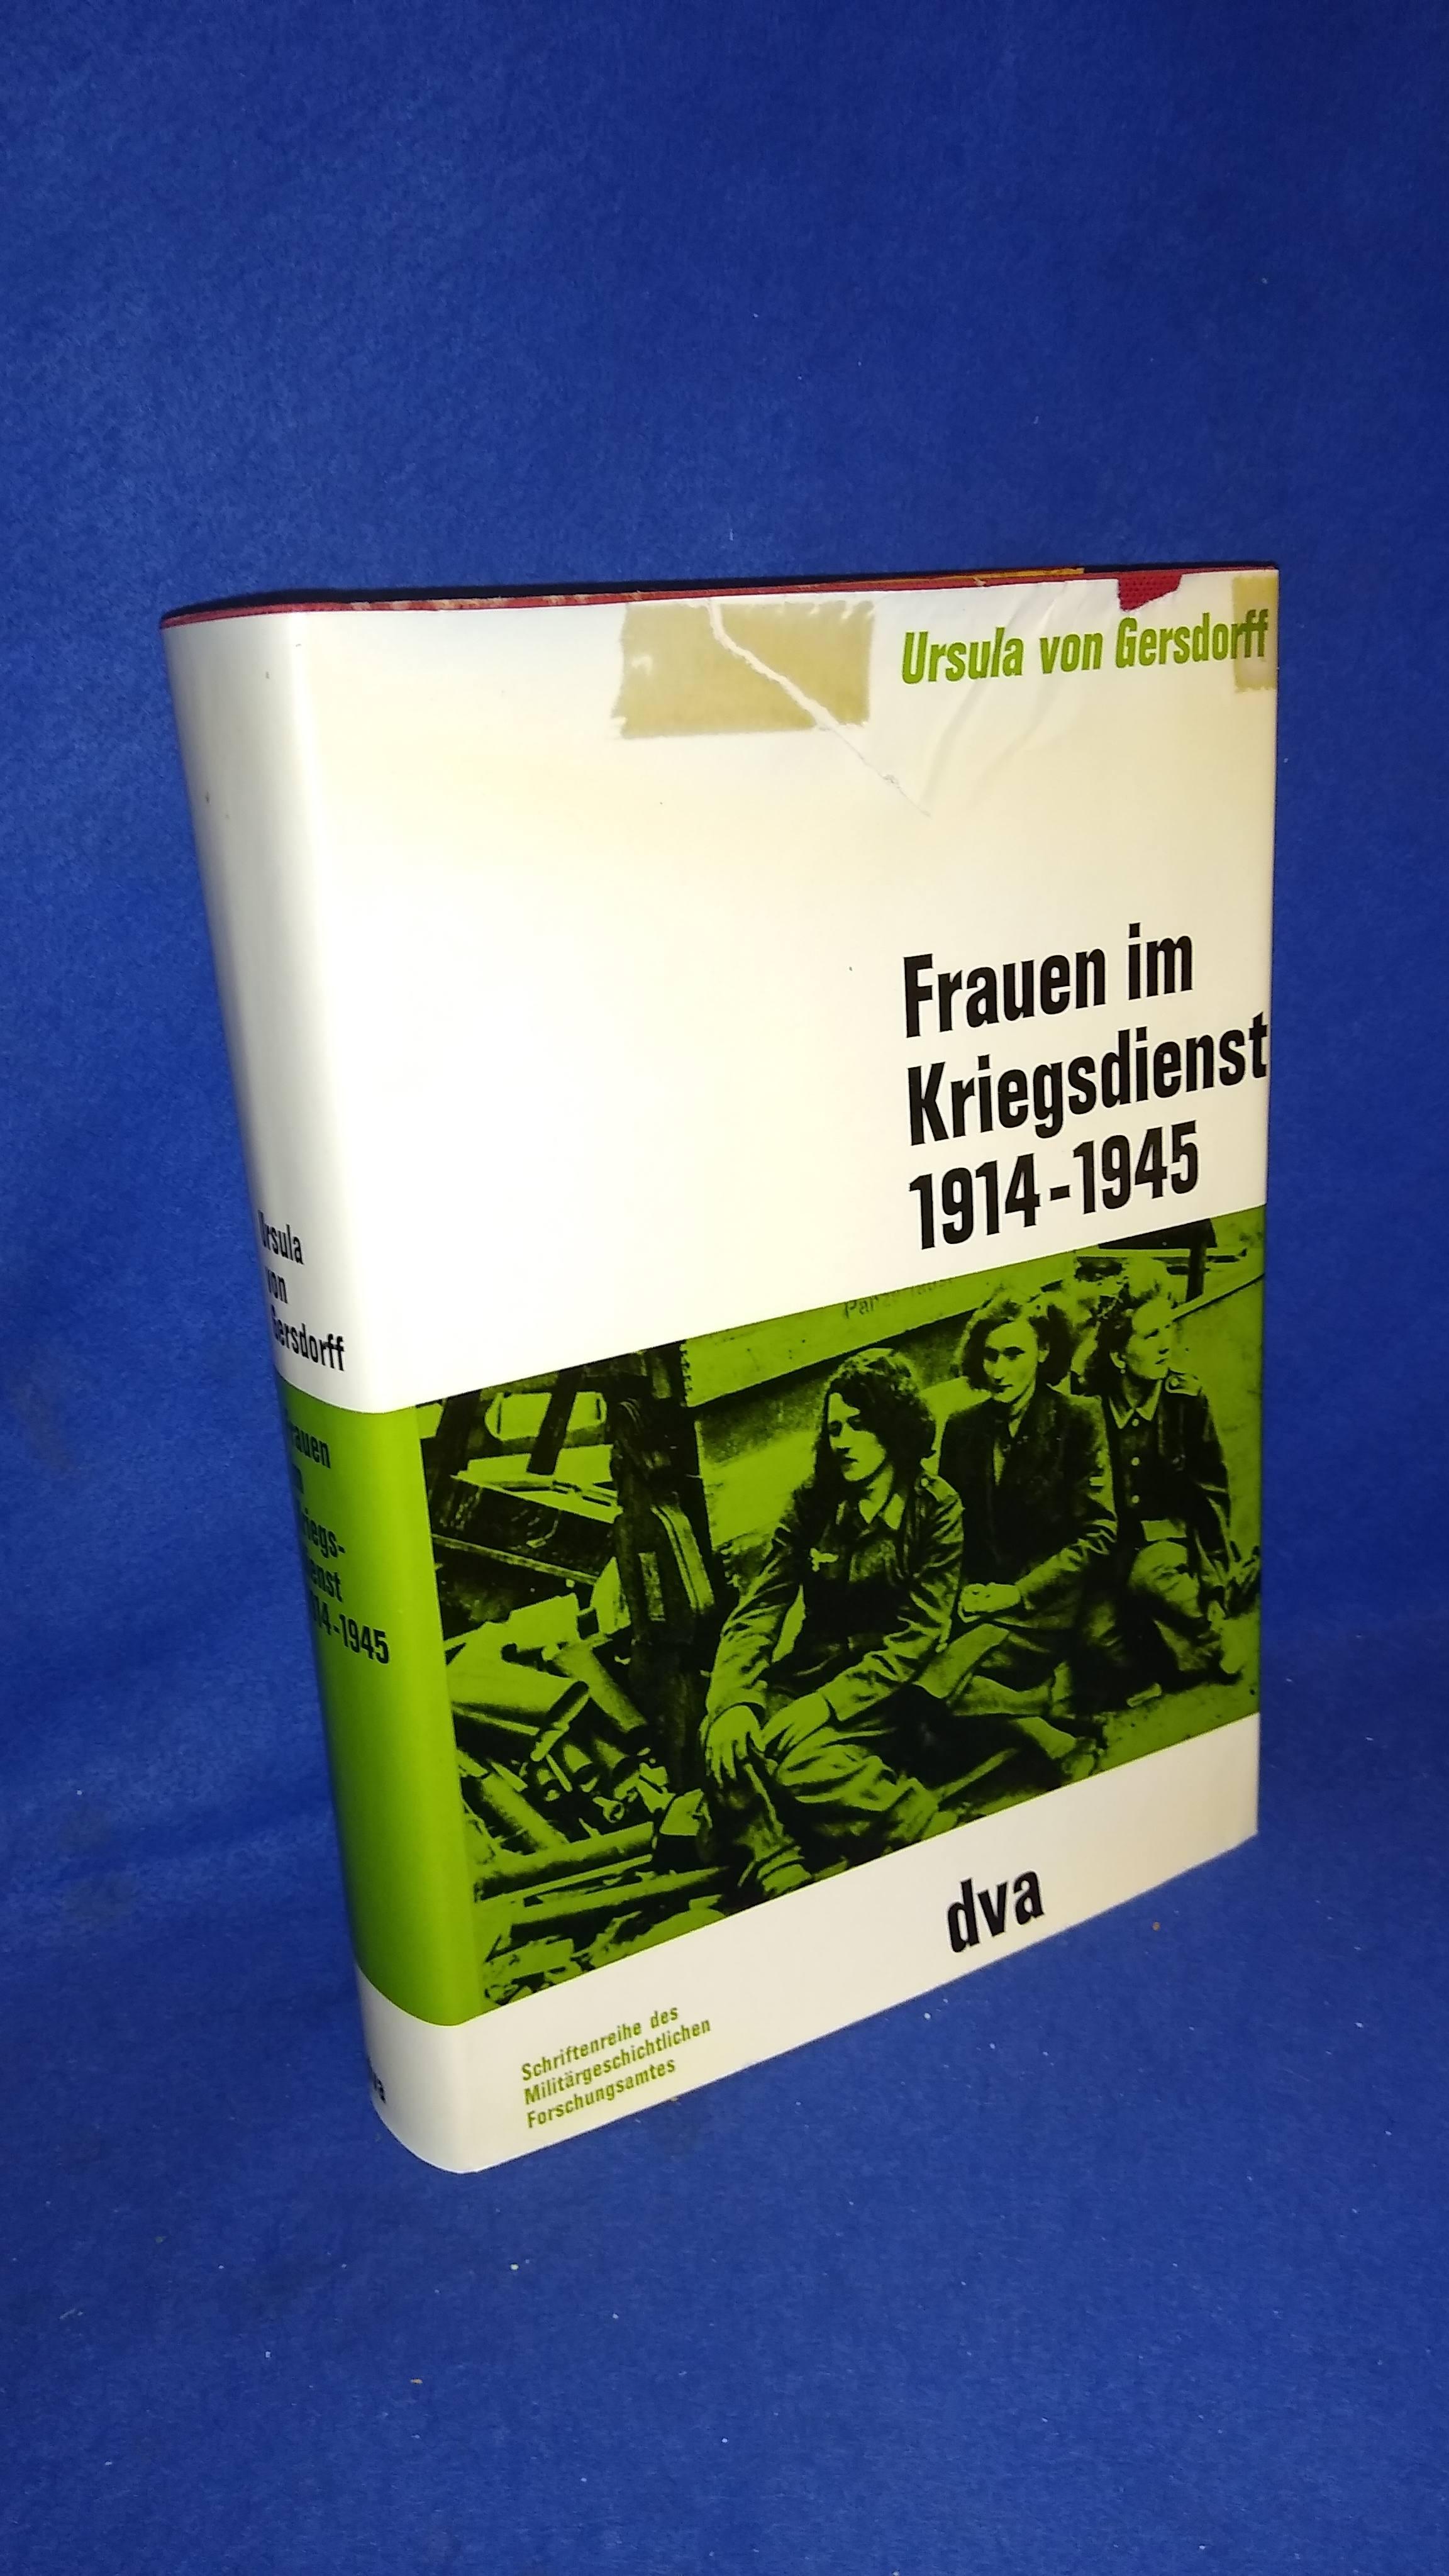 Beiträge zur Militär- und Kriegsgeschichte, Band 11: Frauen im Kriegsdienst 1914 - 1945.